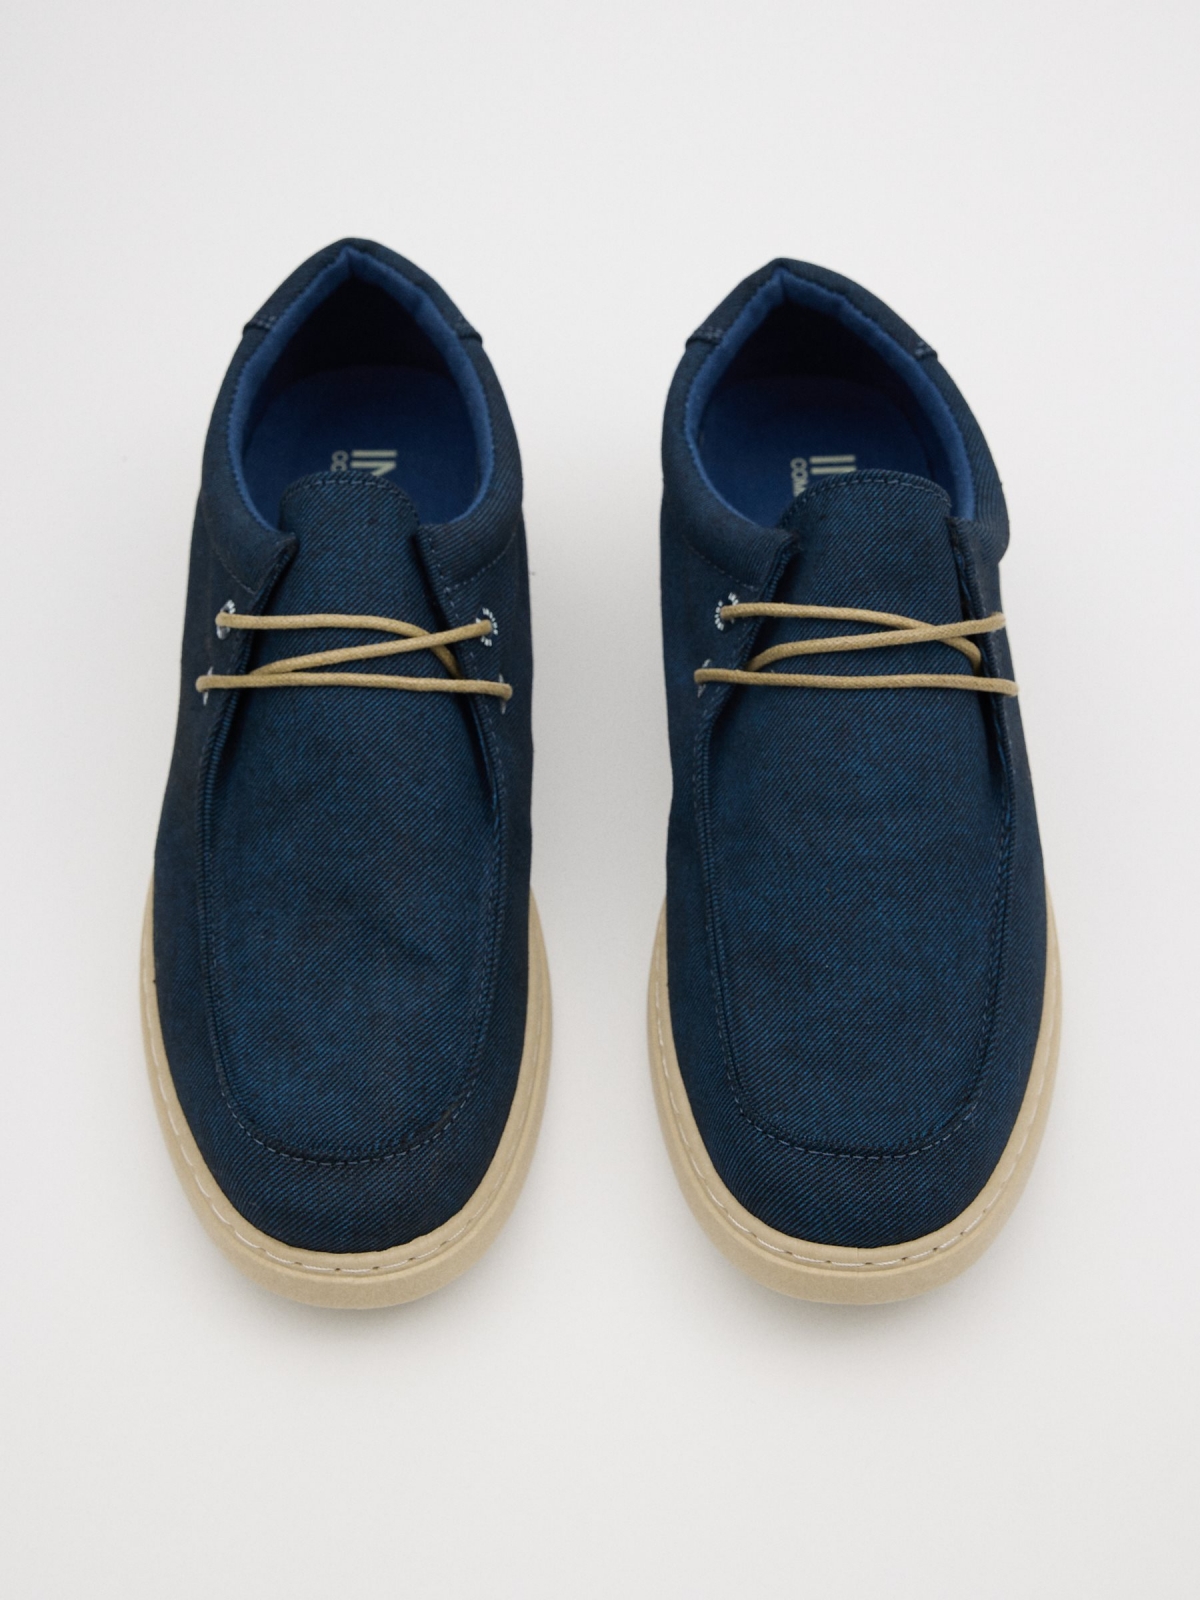 Zapato bordón casual marino azul petróleo vista cenital